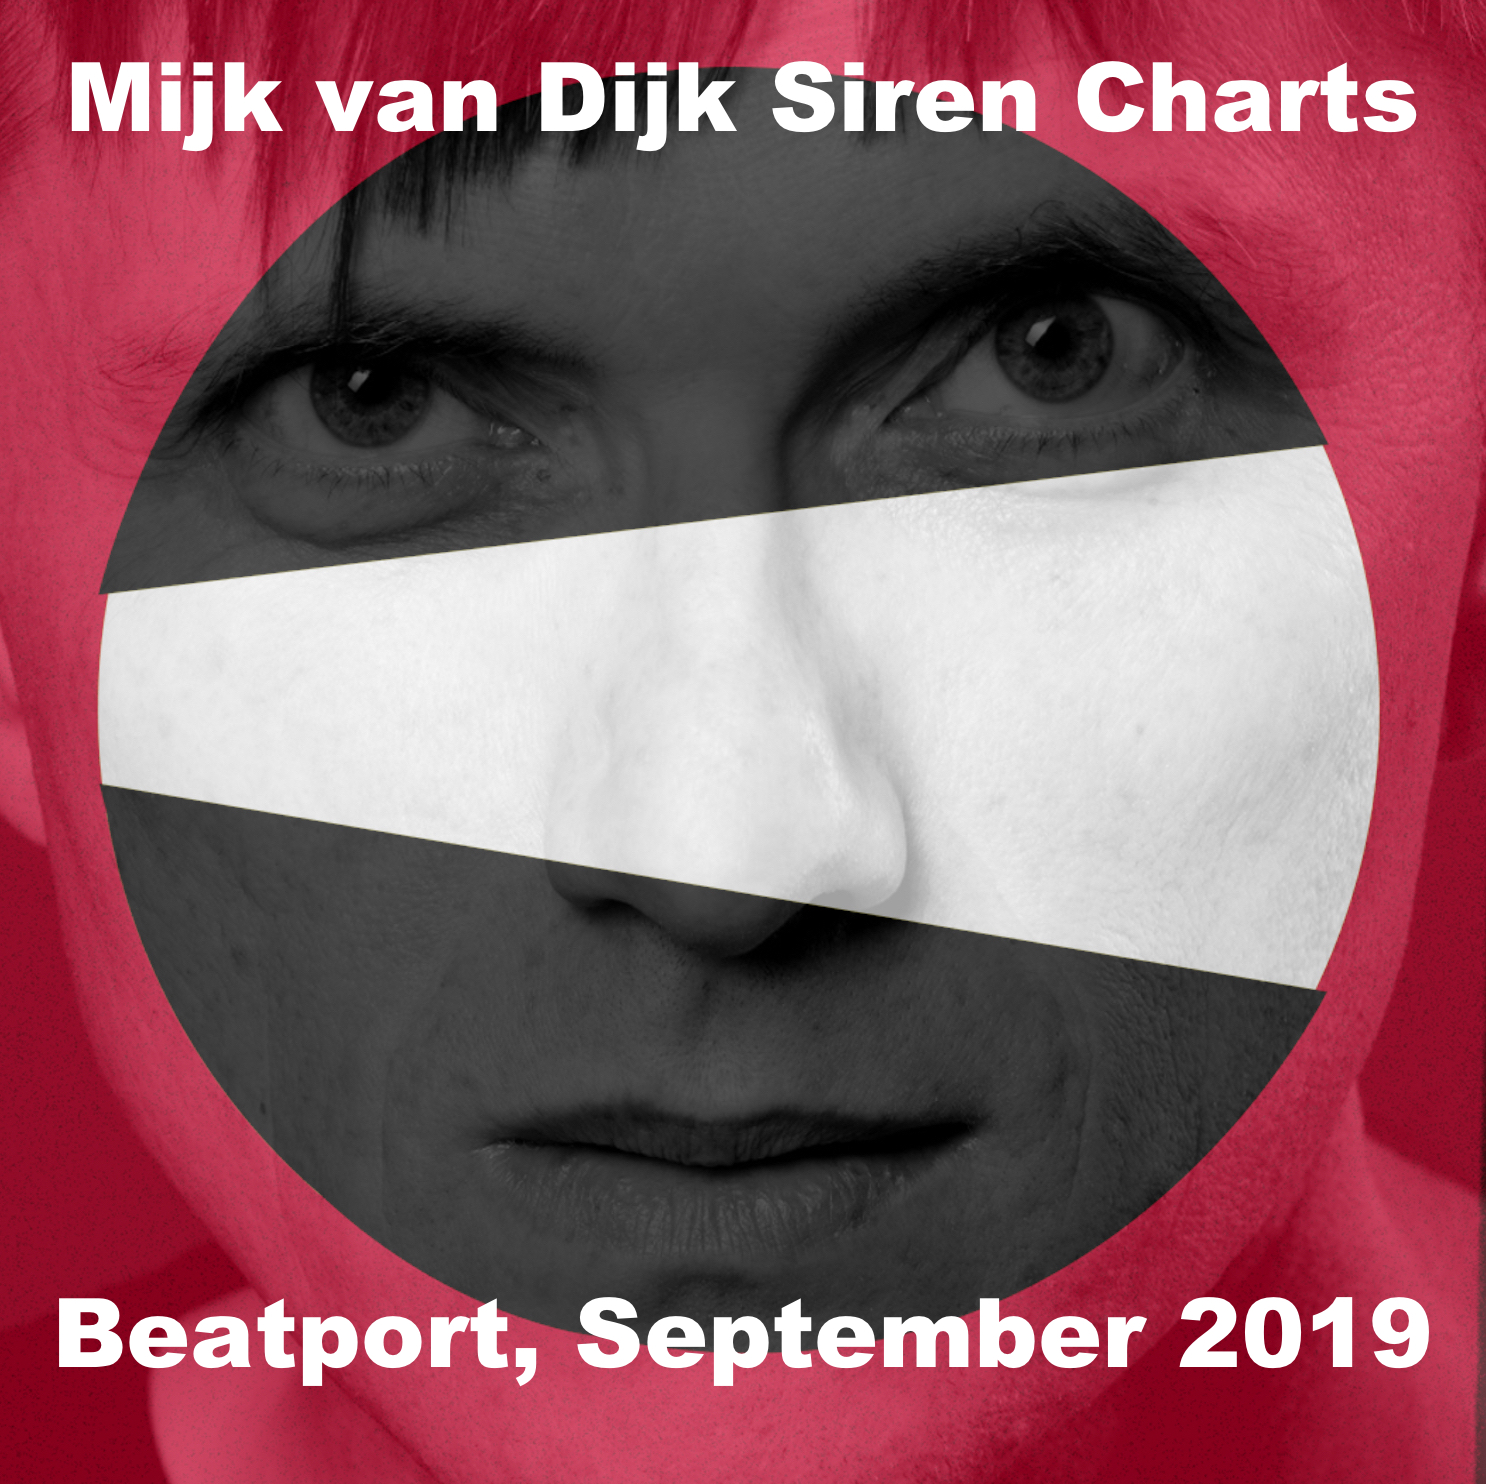 Mijk van Dijk Siren Charts September 2019 for Beatport